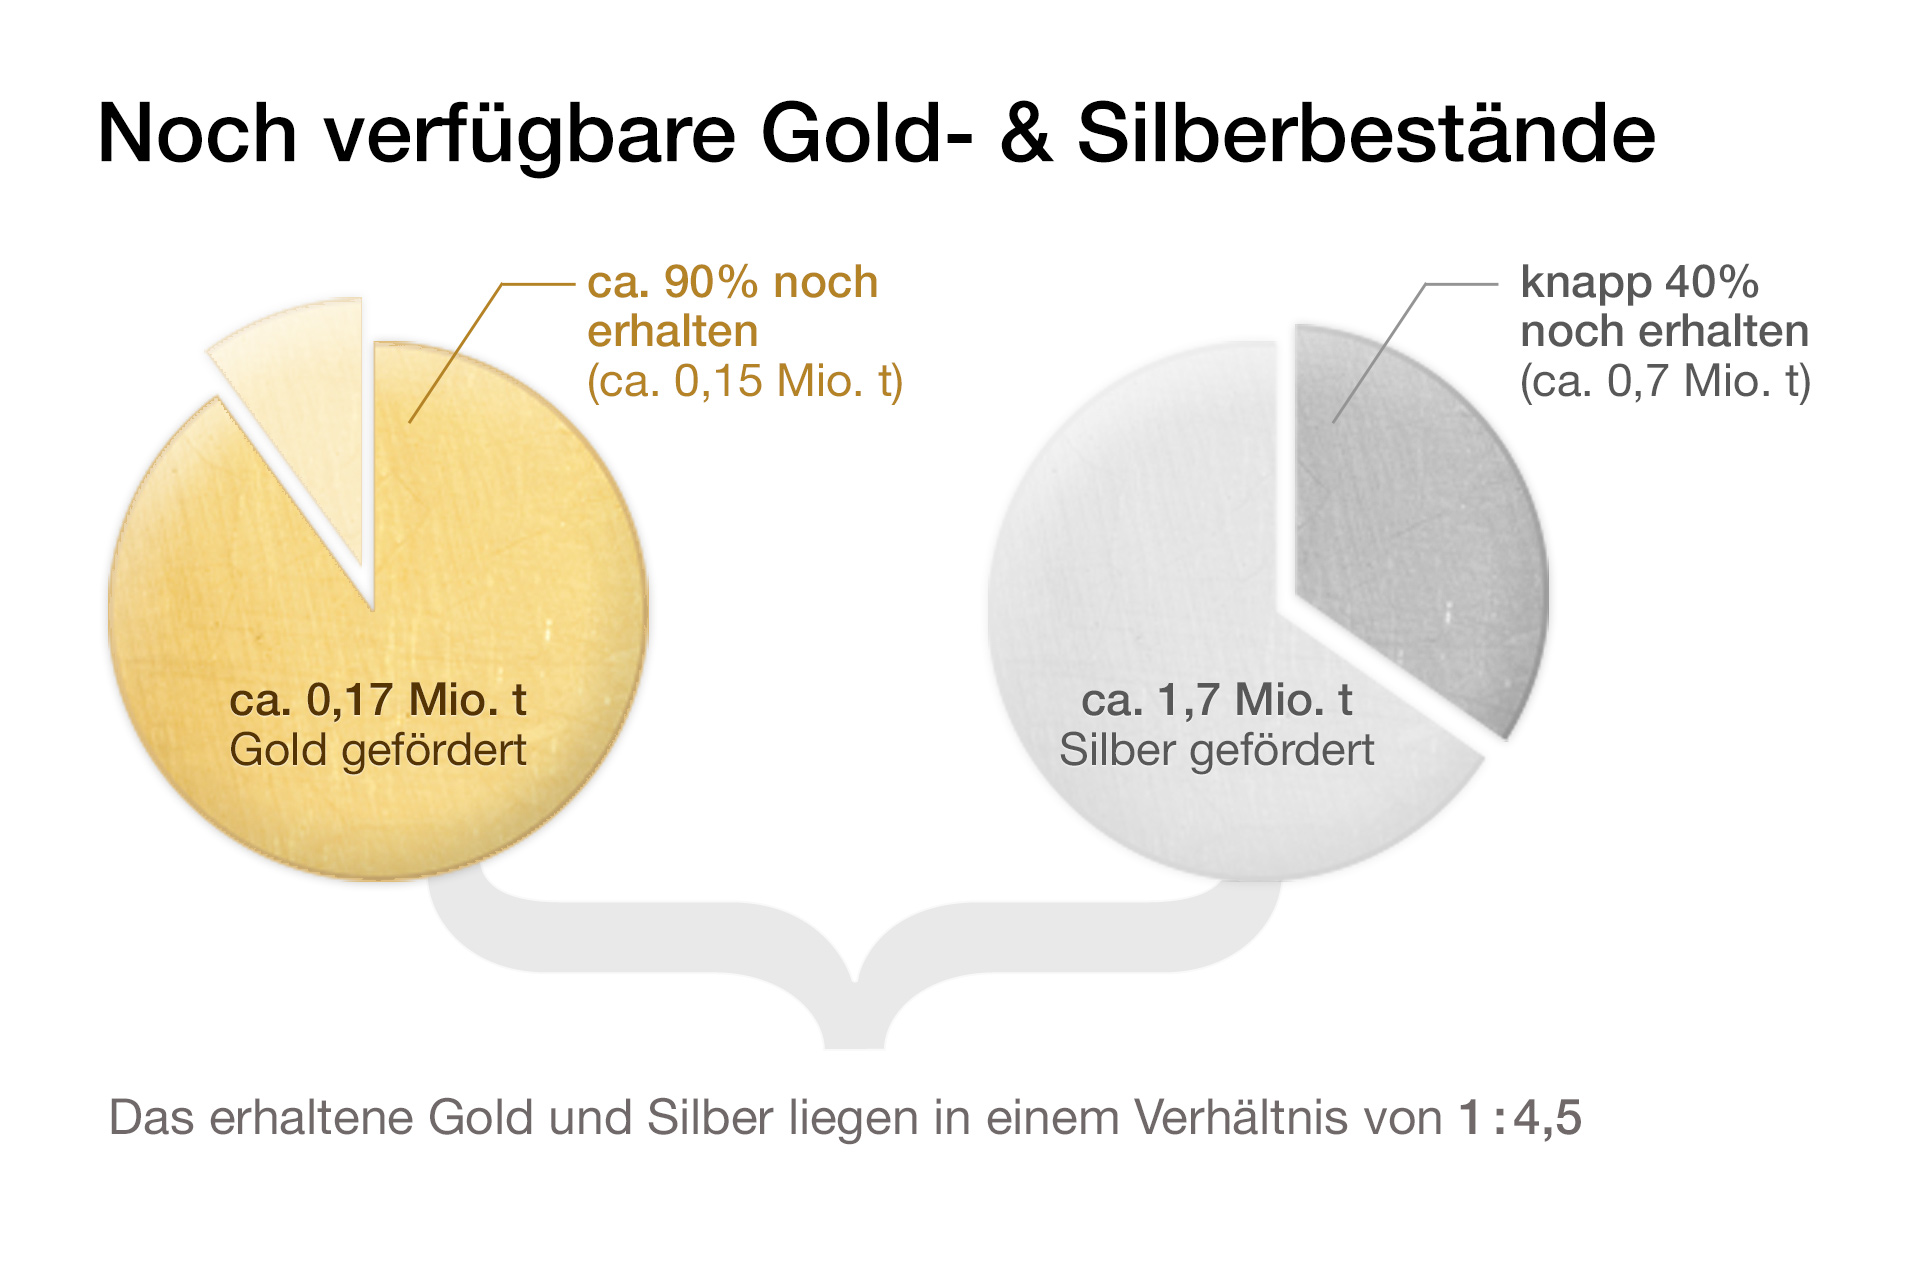 Noch verfügbare Silber- und Goldbestände ergeben ein Gold-Silber-Ratio von 1:4,5